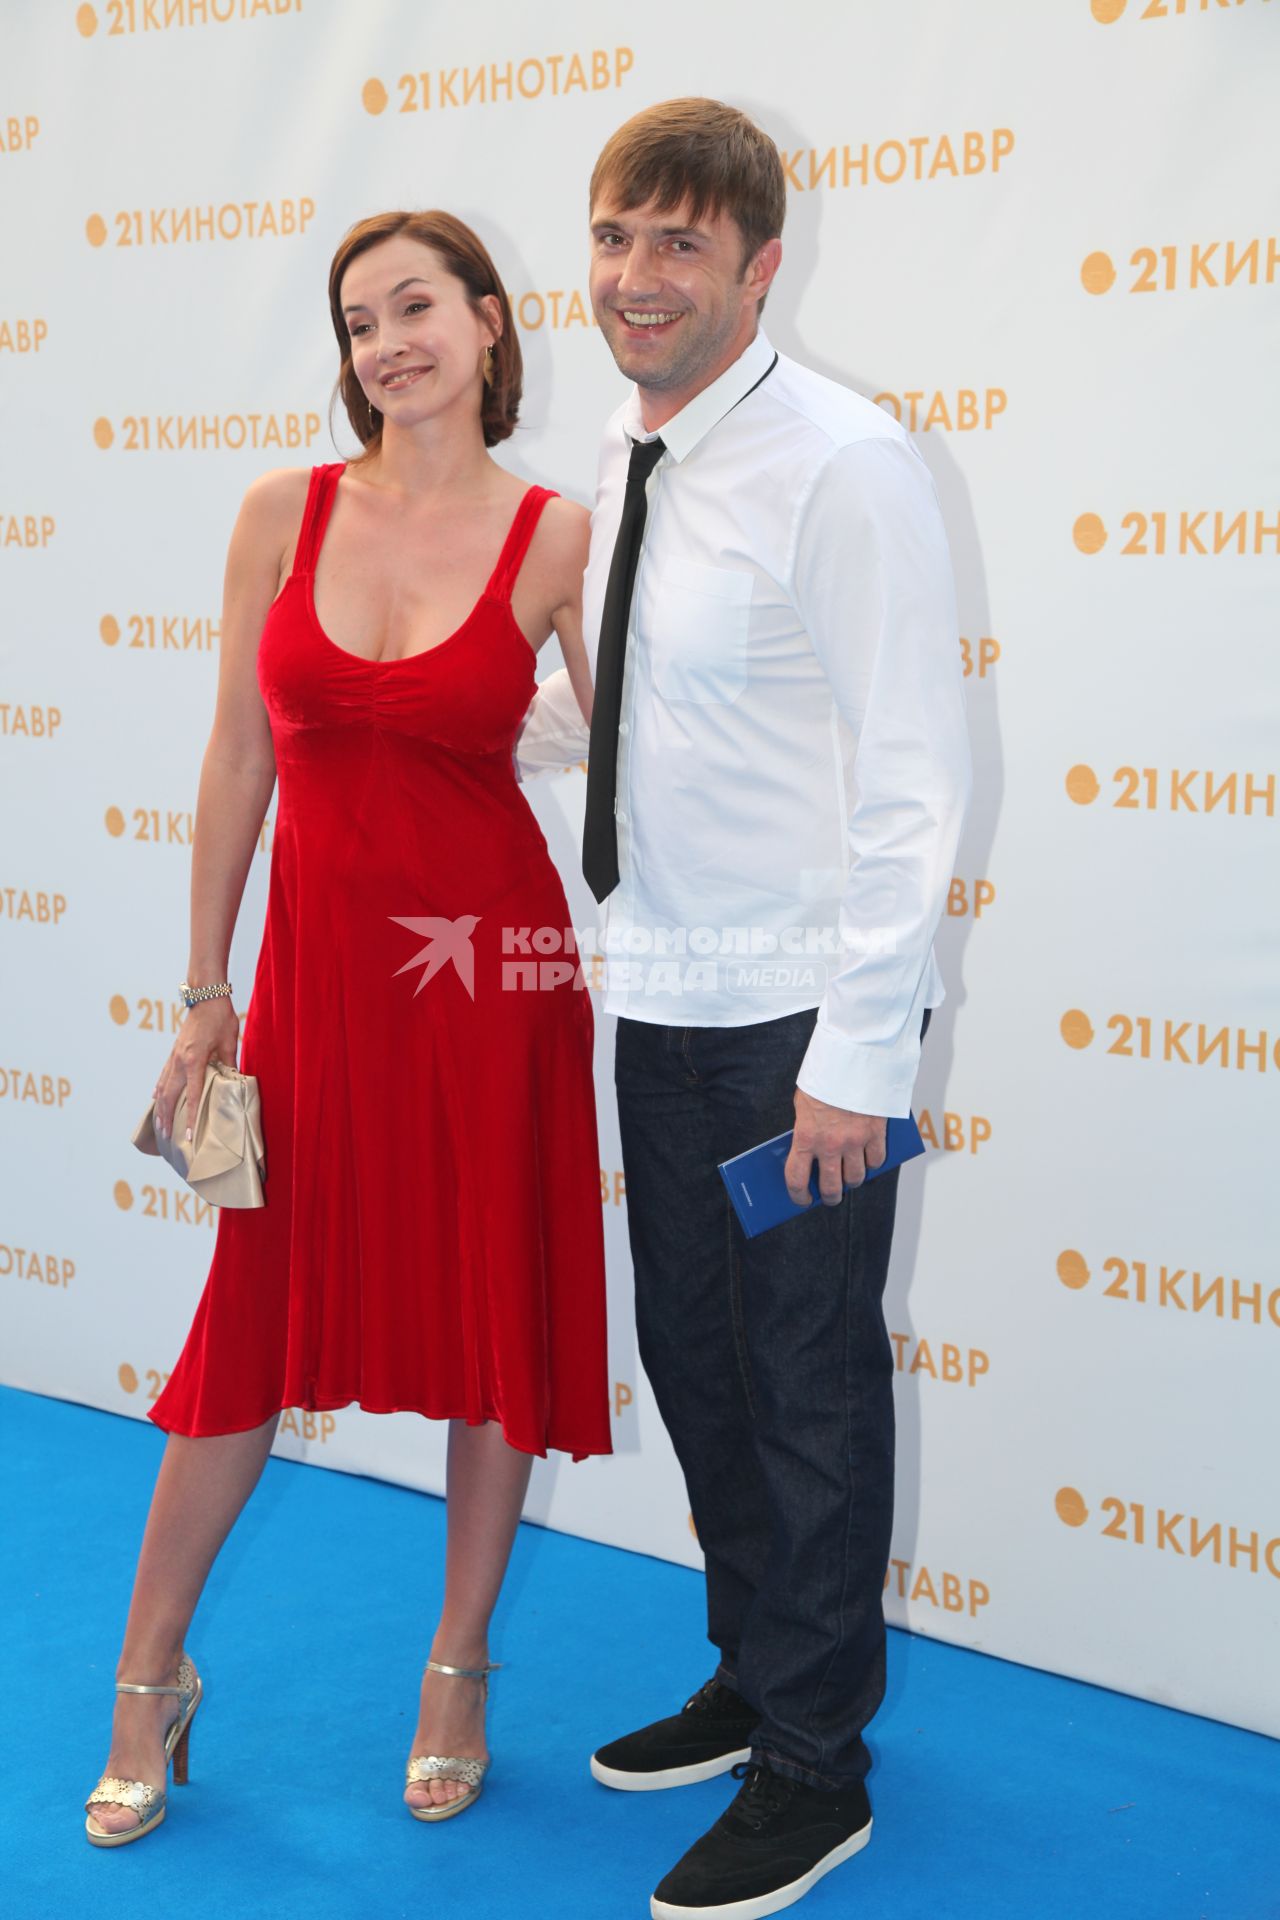 Диск58. \"Кинотавр\" 2010 год. На снимке: актер Вдовиченков Владимир с женой